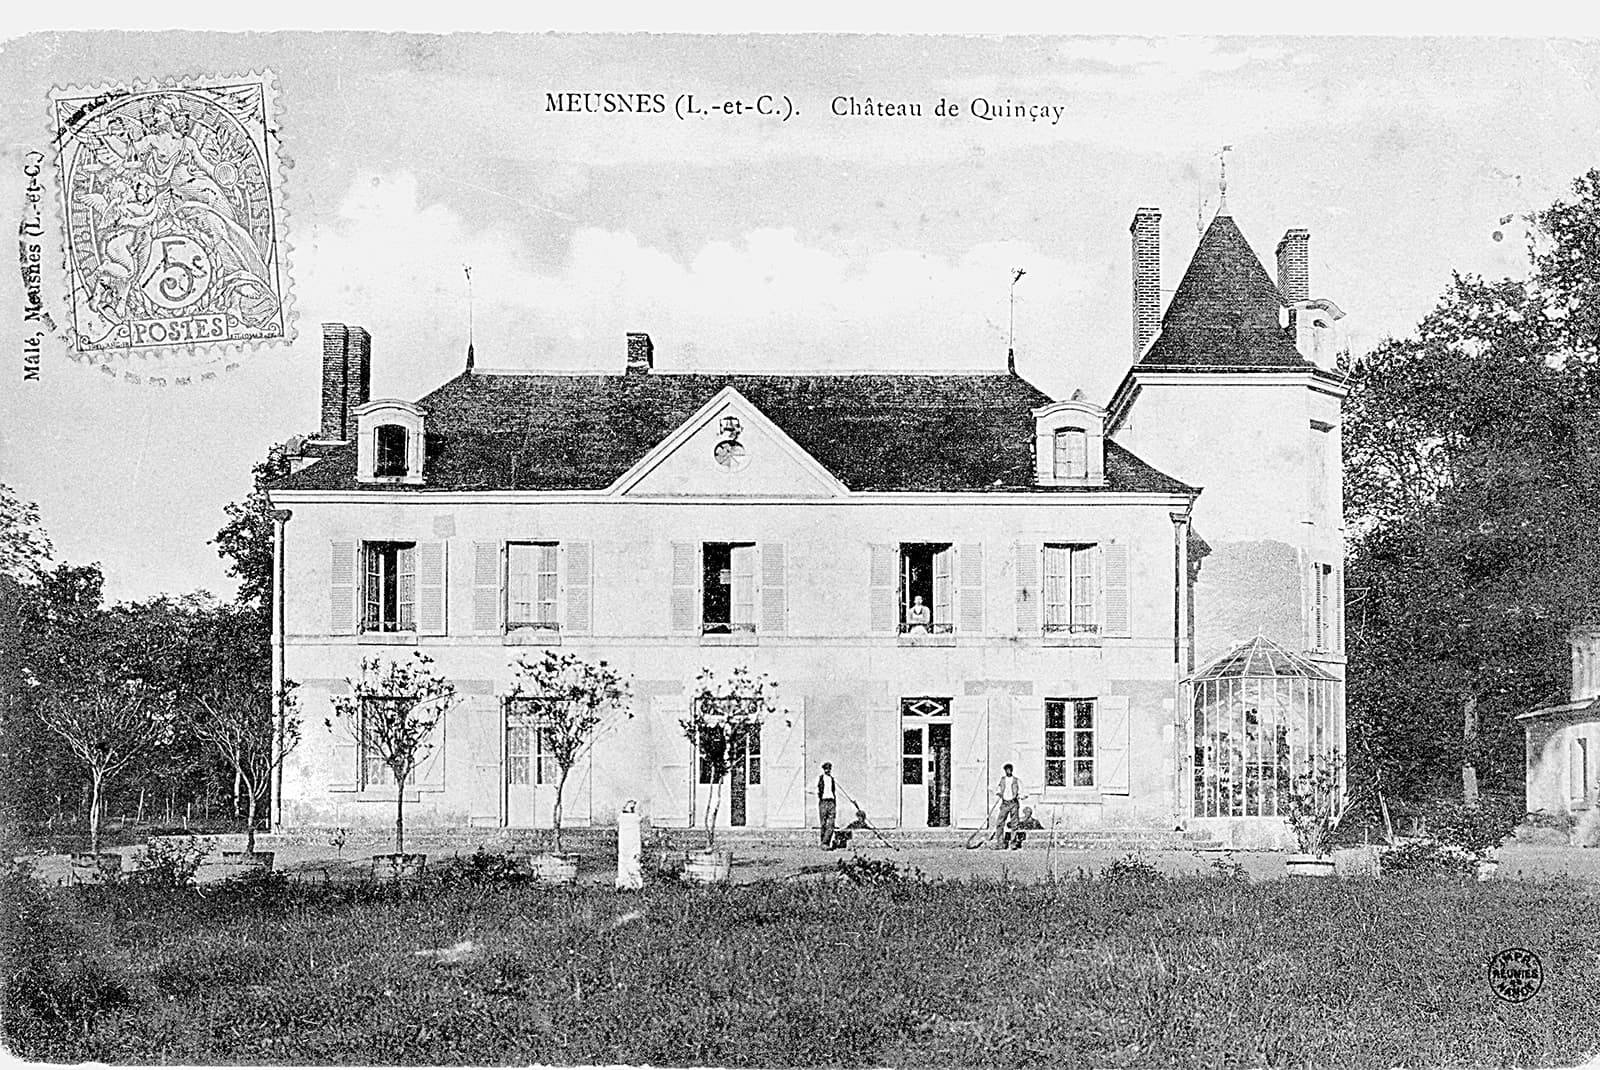 HISTORY - Château de Quinçay